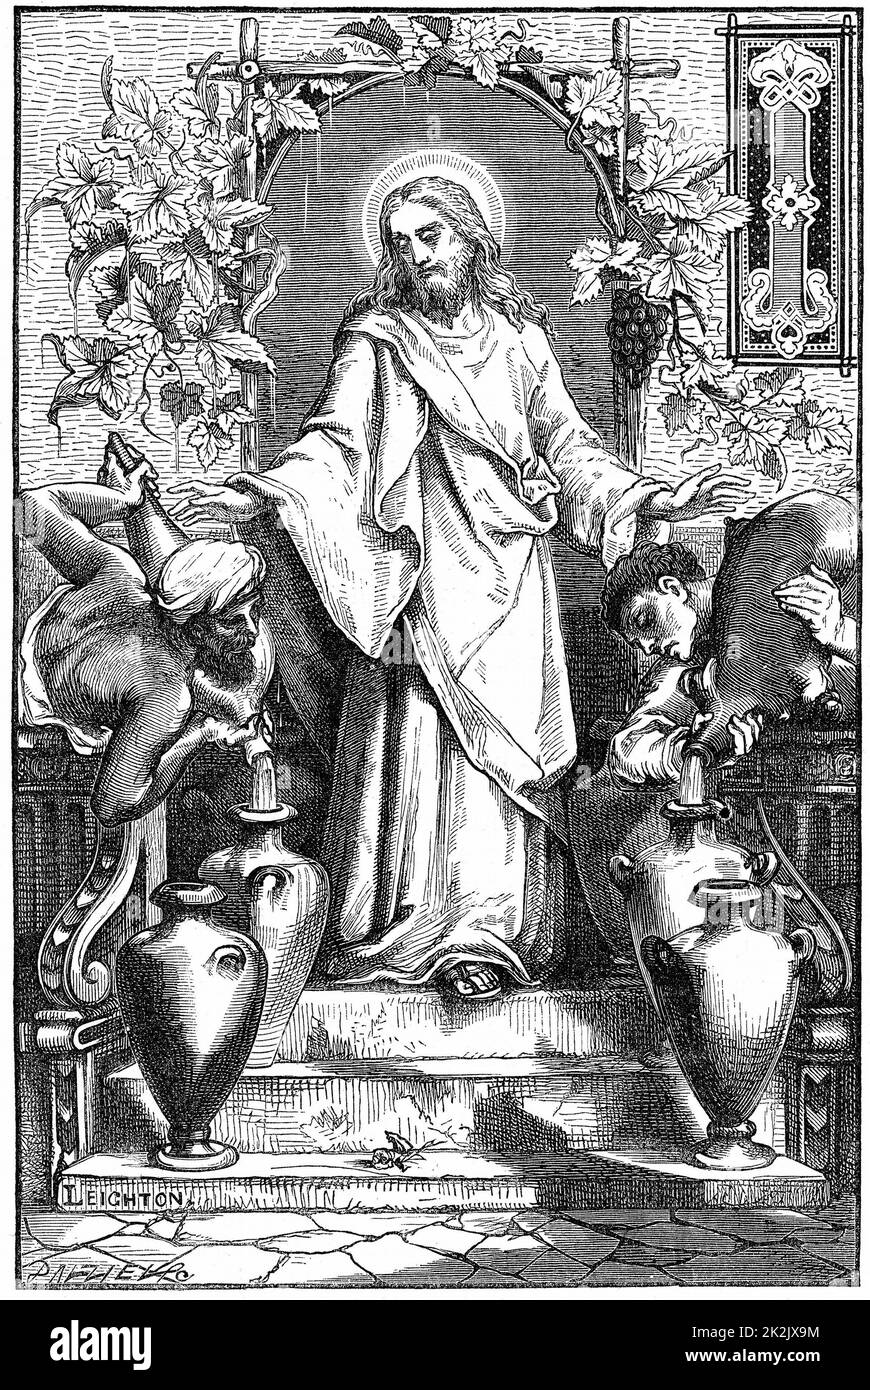 Il matrimonio a Canaan. Gesù trasforma l'acqua in vino. Illustrazione di Frederick, Lord Leighton. Incisione in legno del 1870 Foto Stock